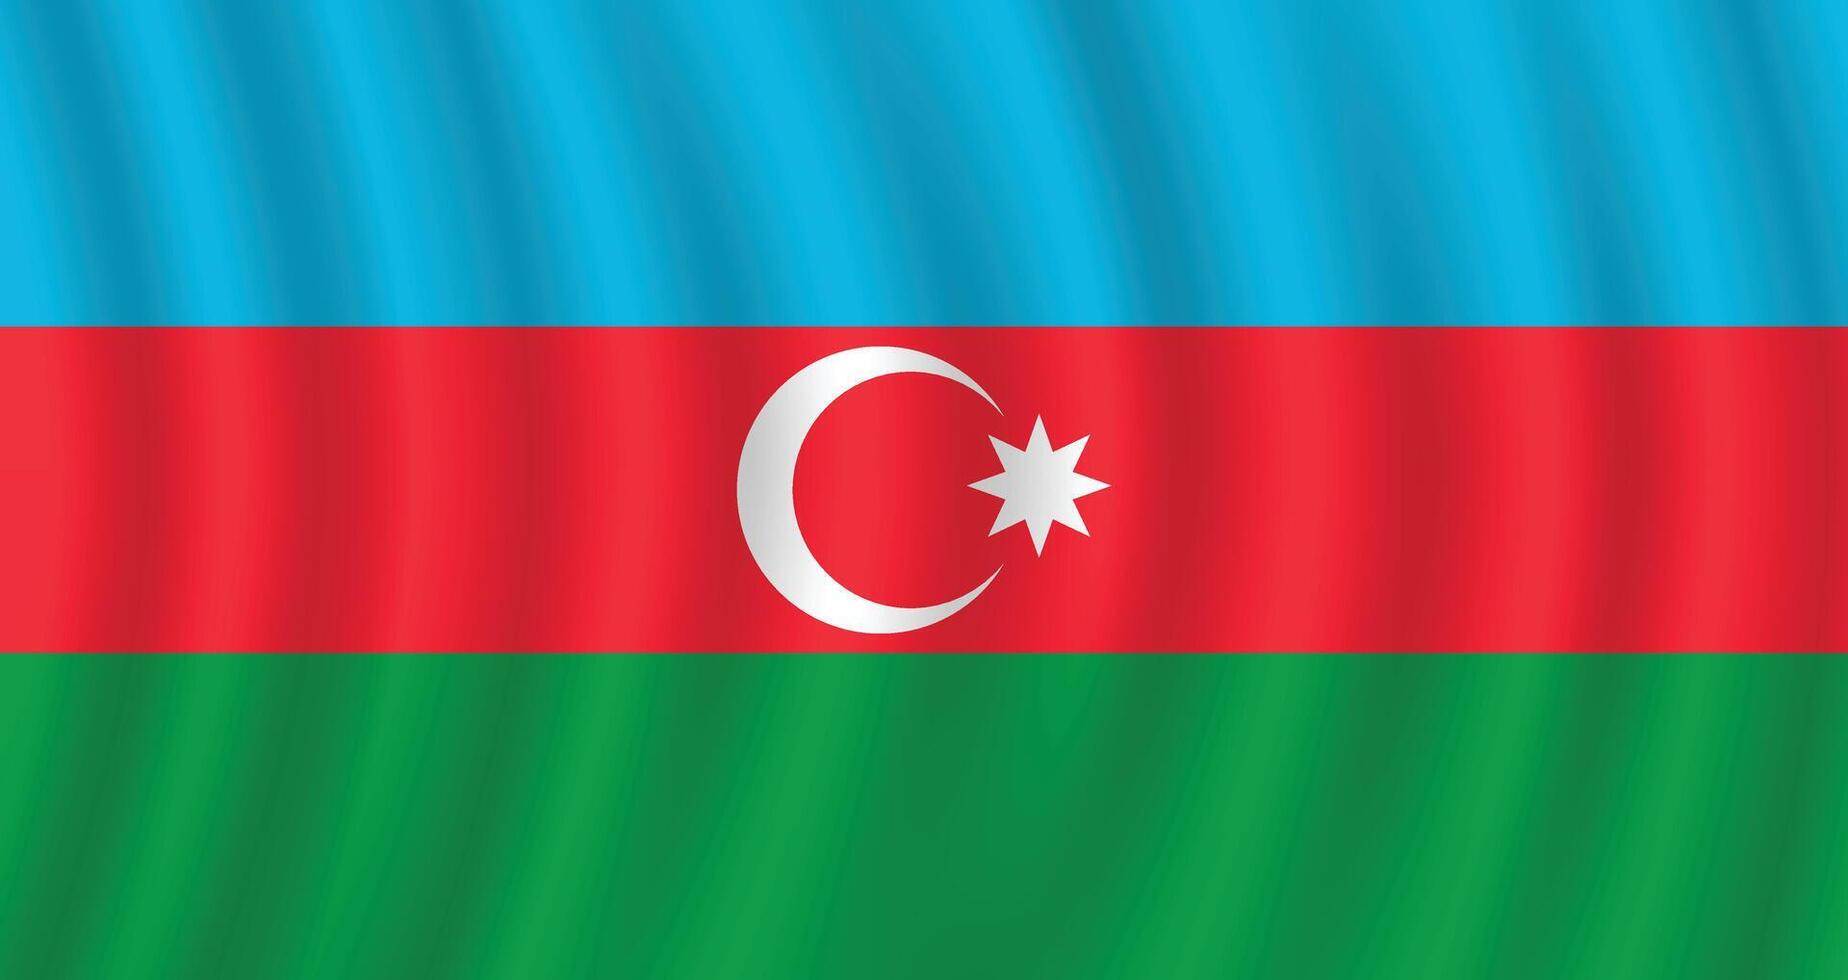 plano ilustração do Azerbaijão bandeira. Azerbaijão nacional bandeira Projeto. Azerbaijão onda bandeira. vetor